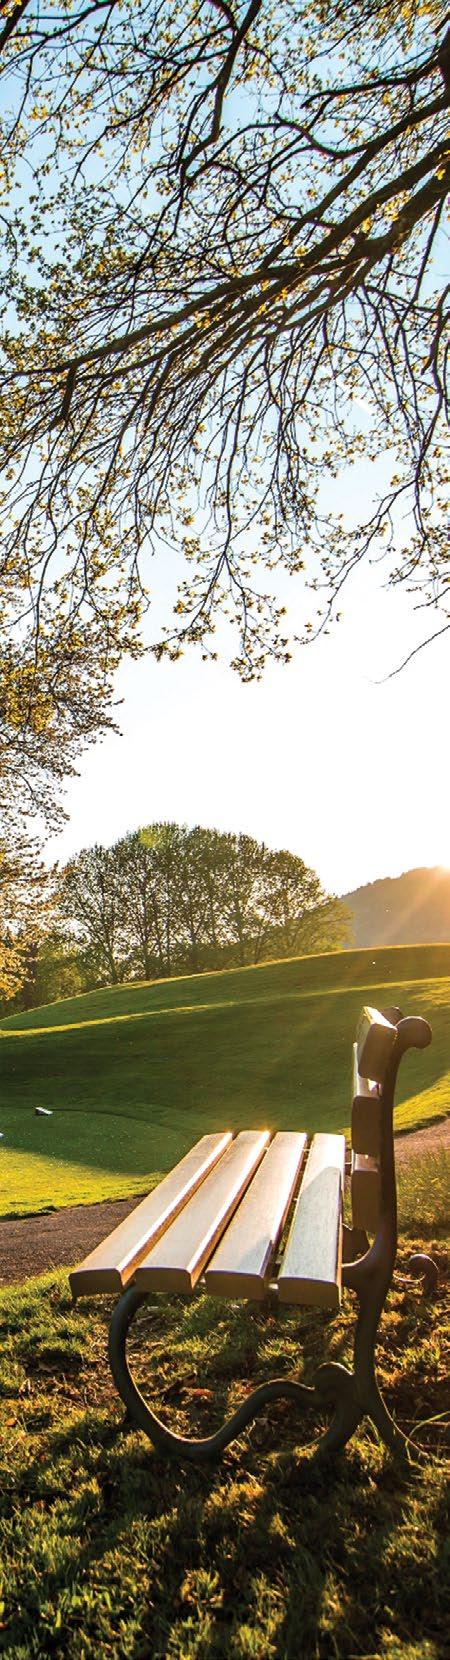 Die Mitgliedschaft bei The Leading Golf Courses of Germany schafft die eindeutige Positionierung als führende Golfanlage im Golfmarkt eine externe objektive Qualitätskontrolle Mehrwerte für Ihre